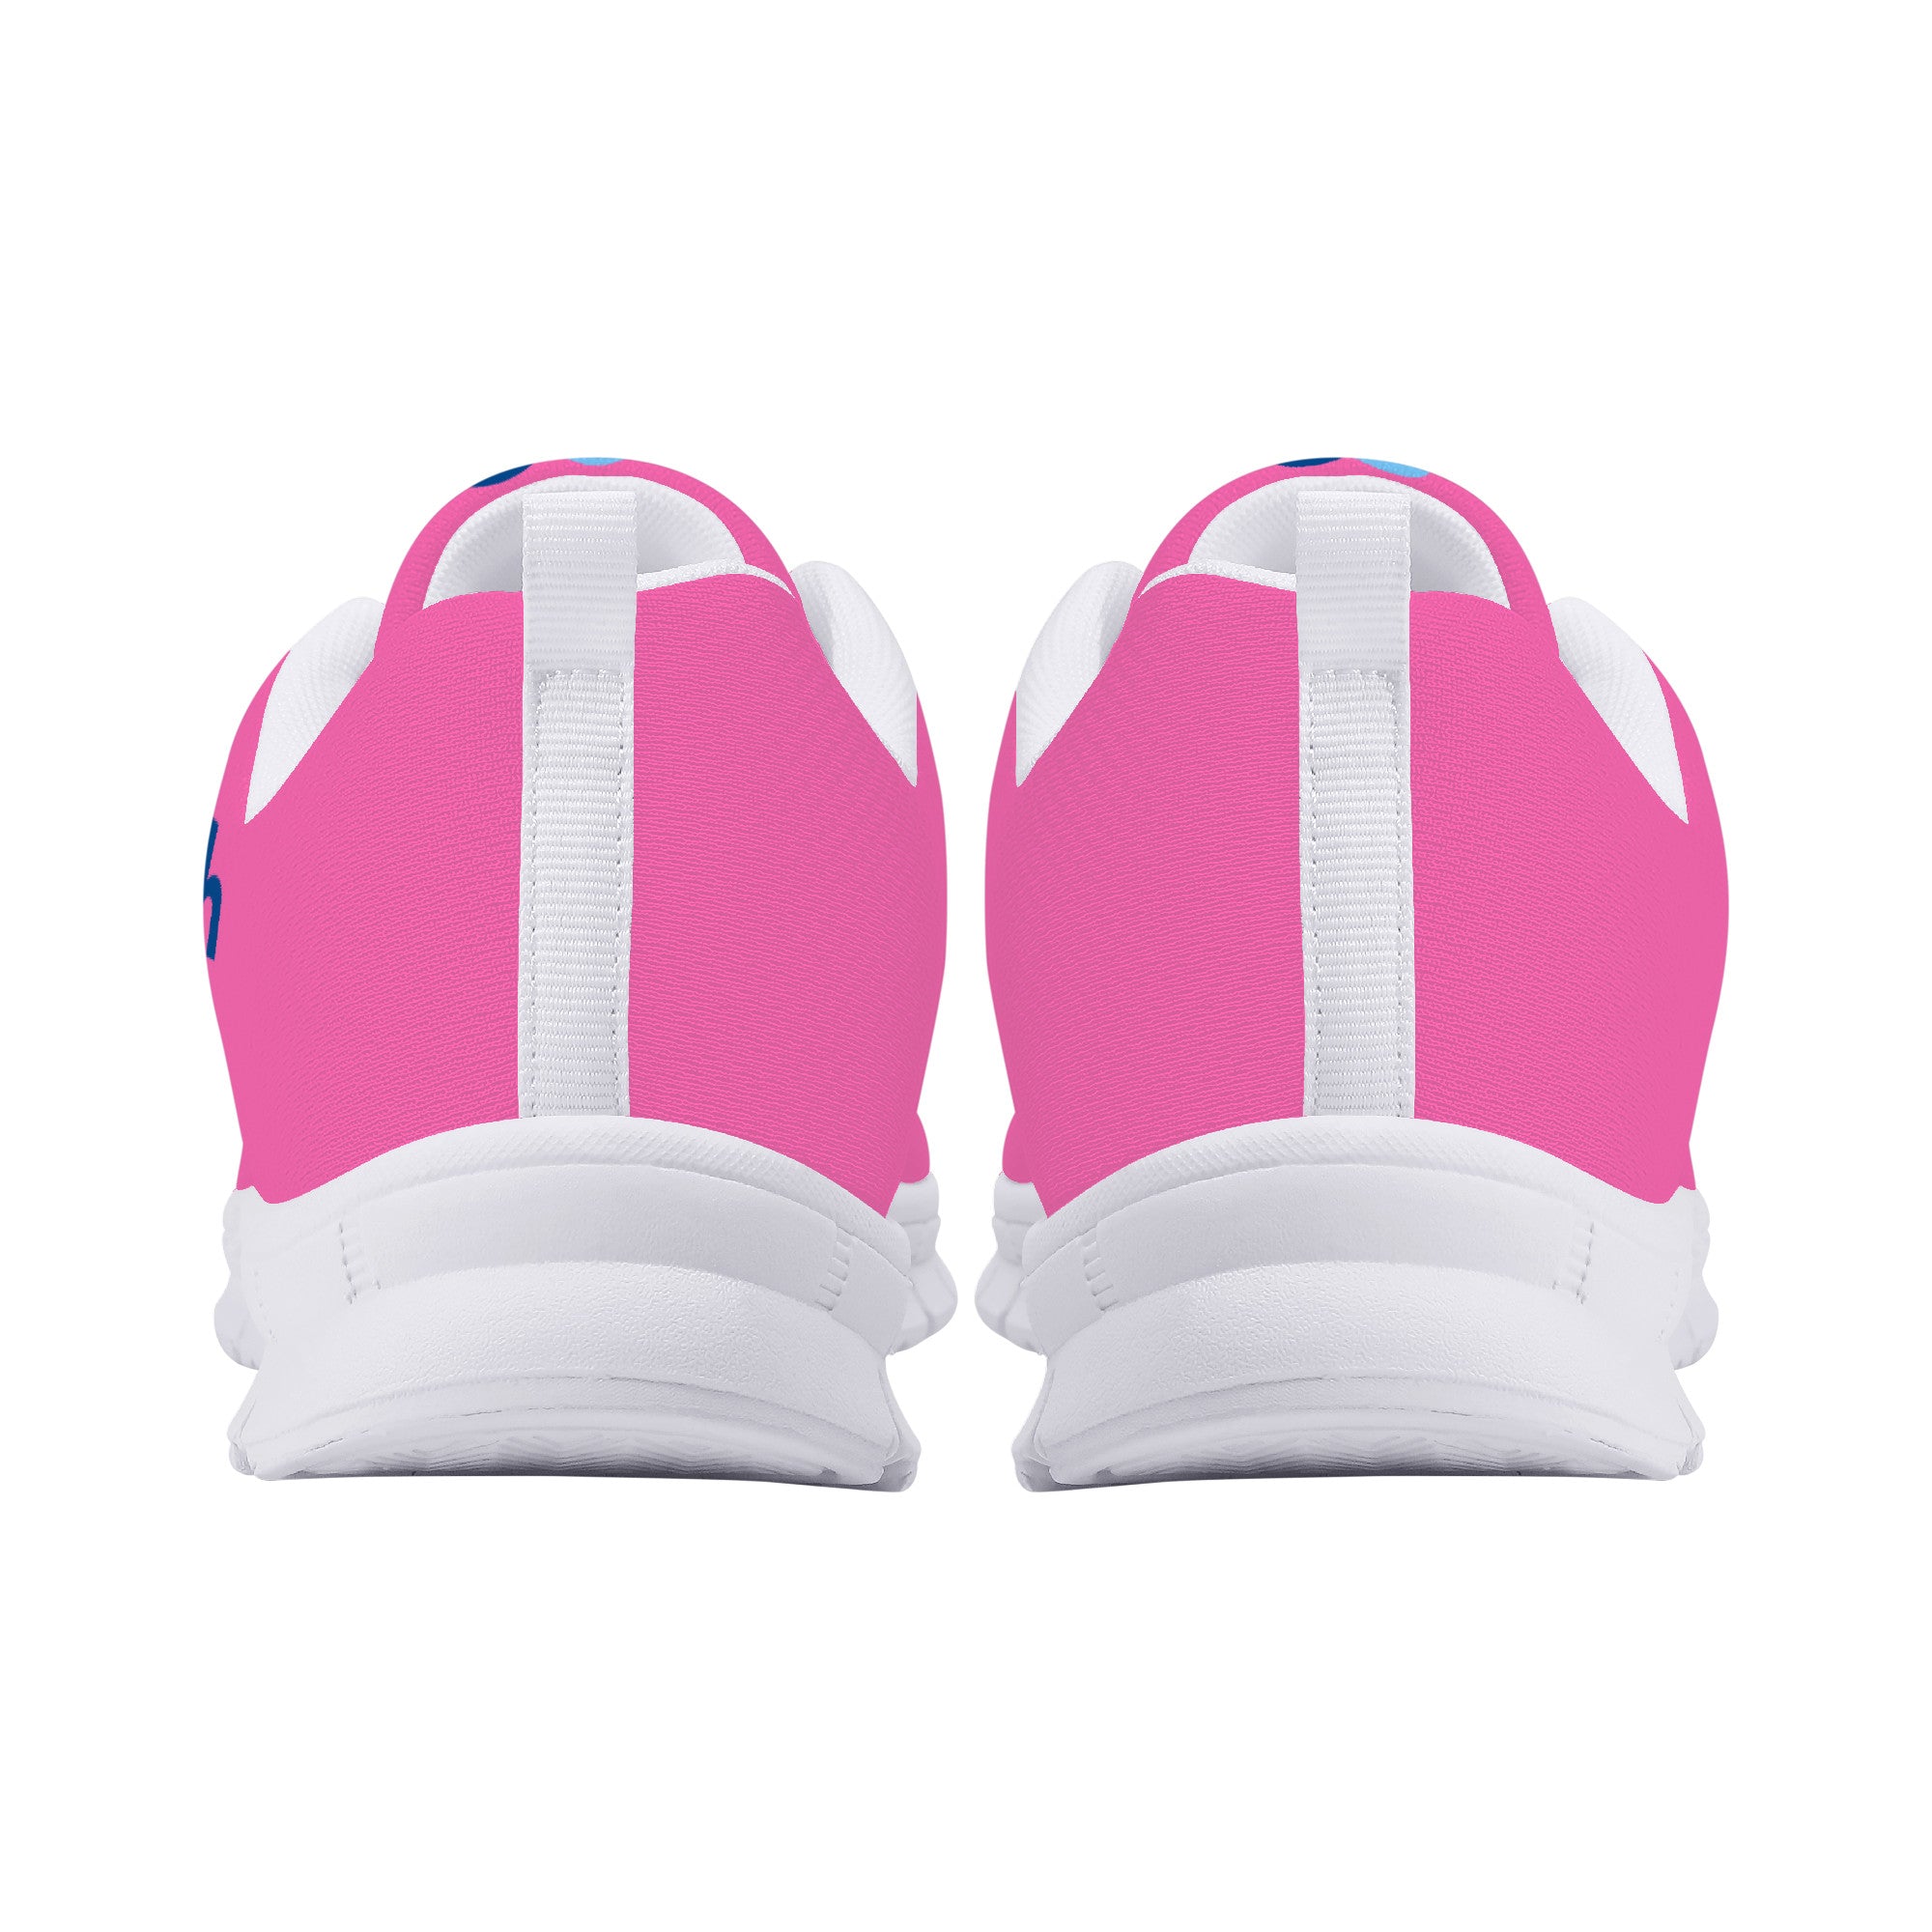 Jogan Health V2 | Custom Branded Company Shoes | Shoe Zero